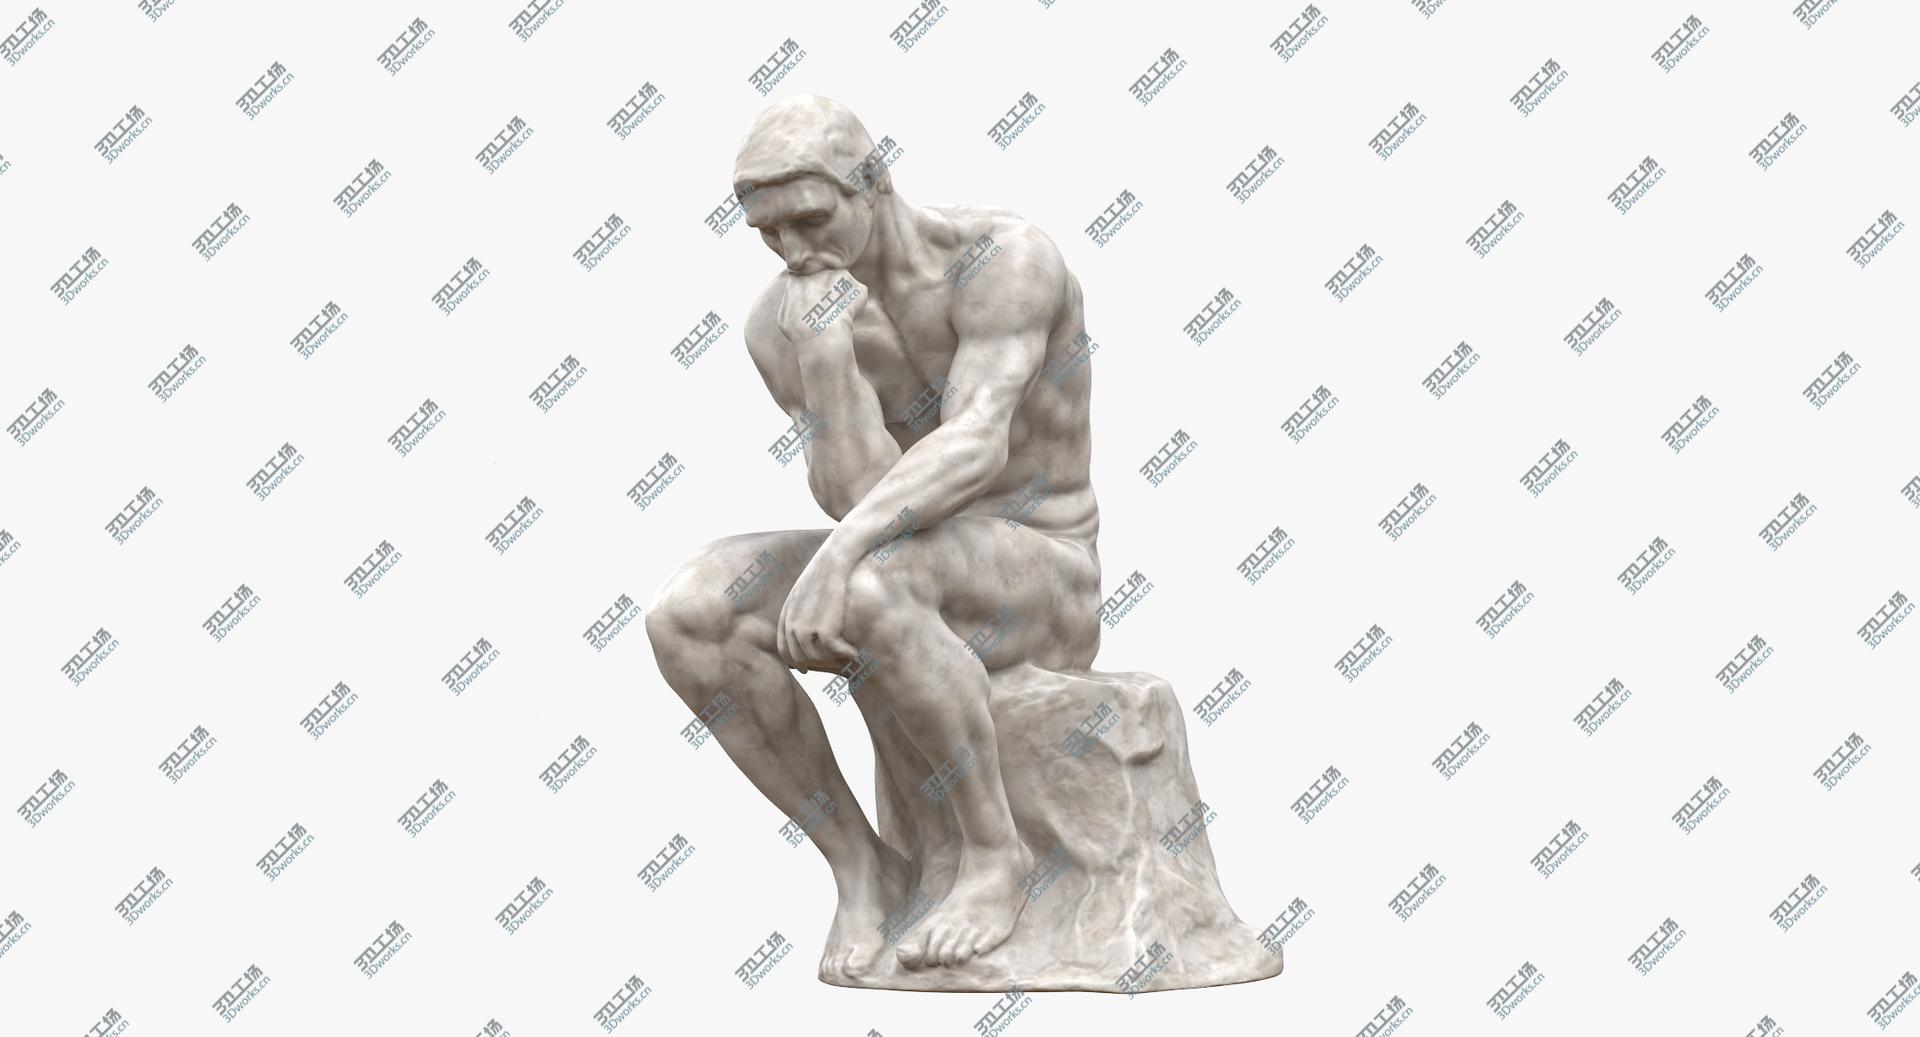 images/goods_img/2021040233/The Thinker Marble 3D model/4.jpg